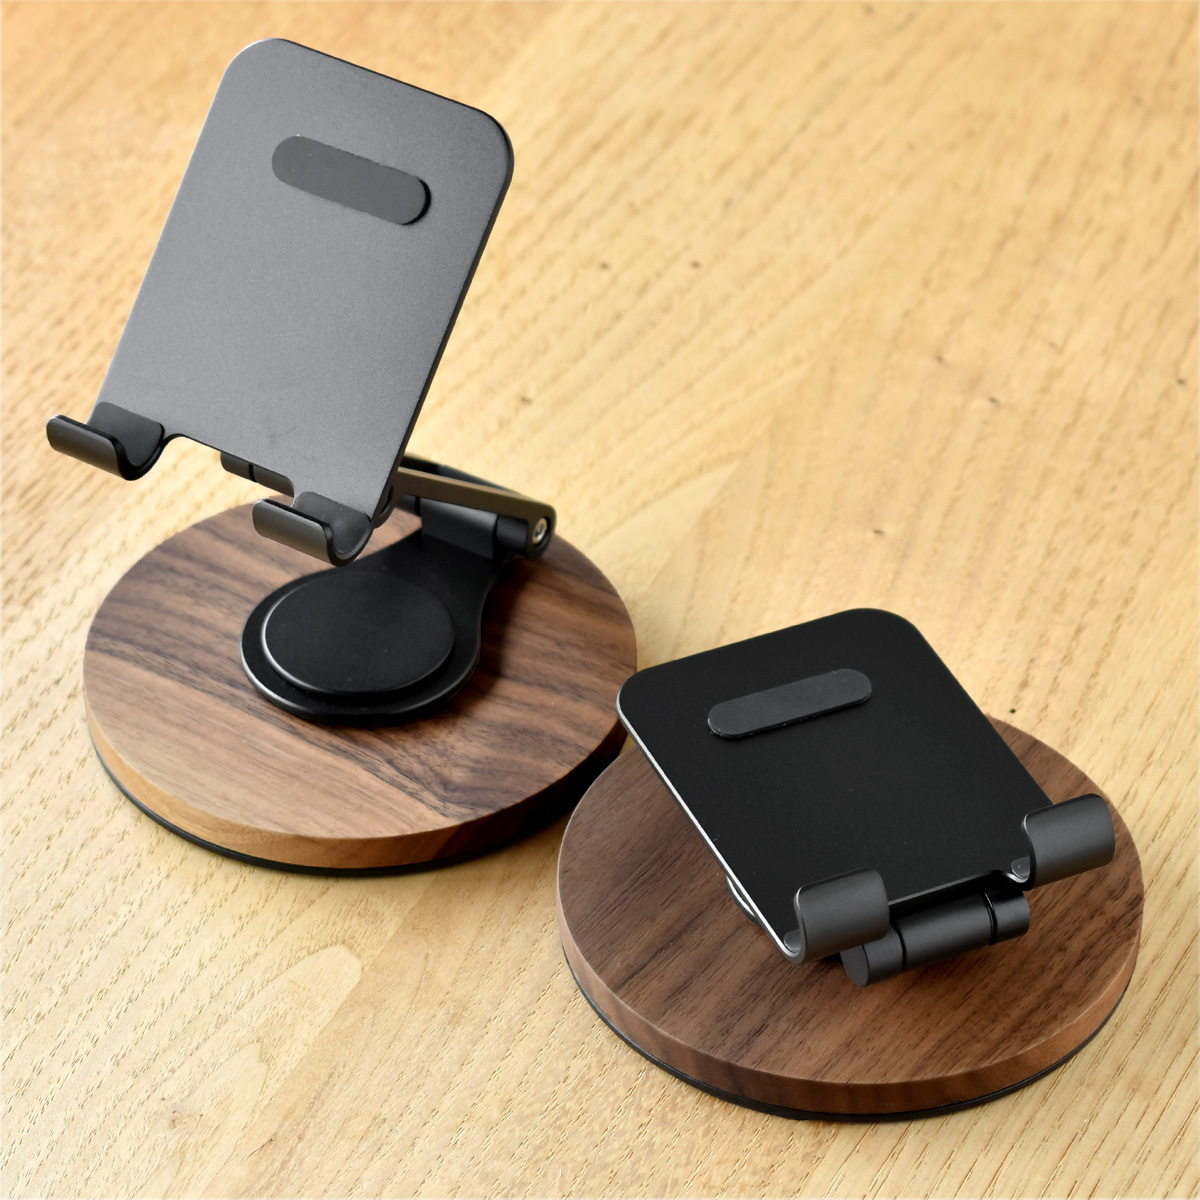 「Smartphone Stand Adjustable」角度調整ができる折り畳み式スマートフォンスタンド